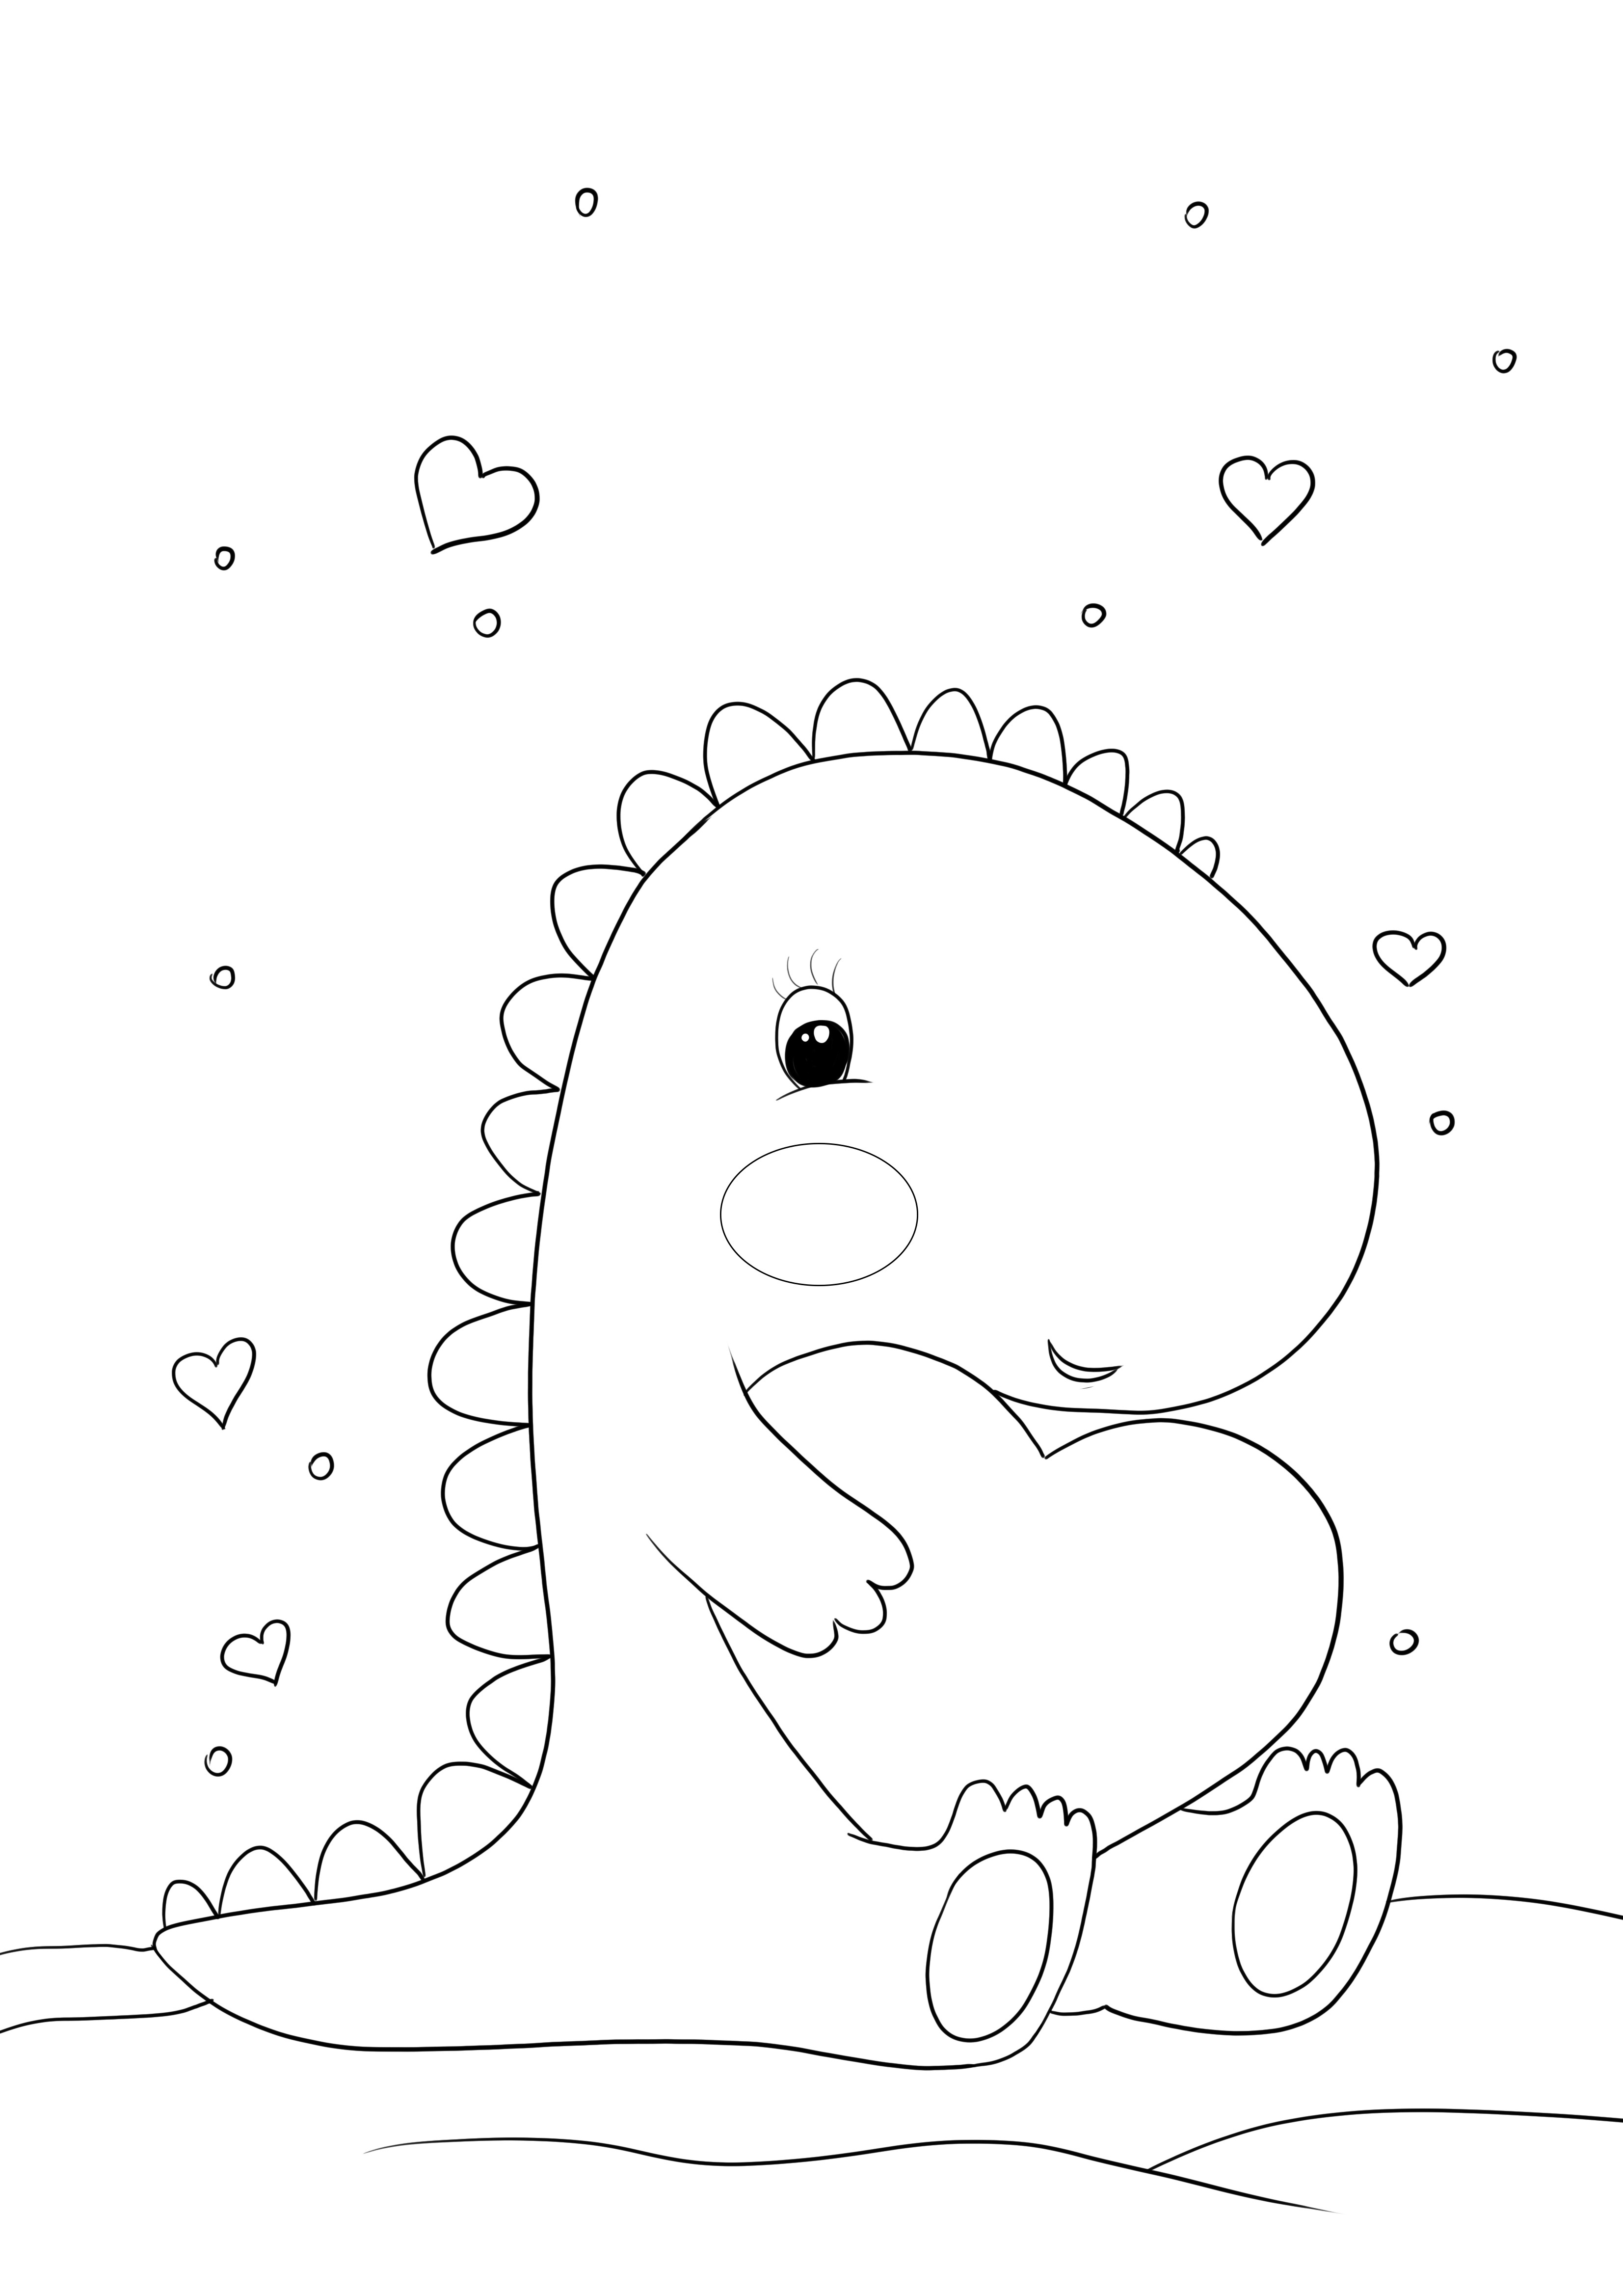 Dinosauro kawaii con un cuore da stampare e colorare gratis per la pagina dei bambini